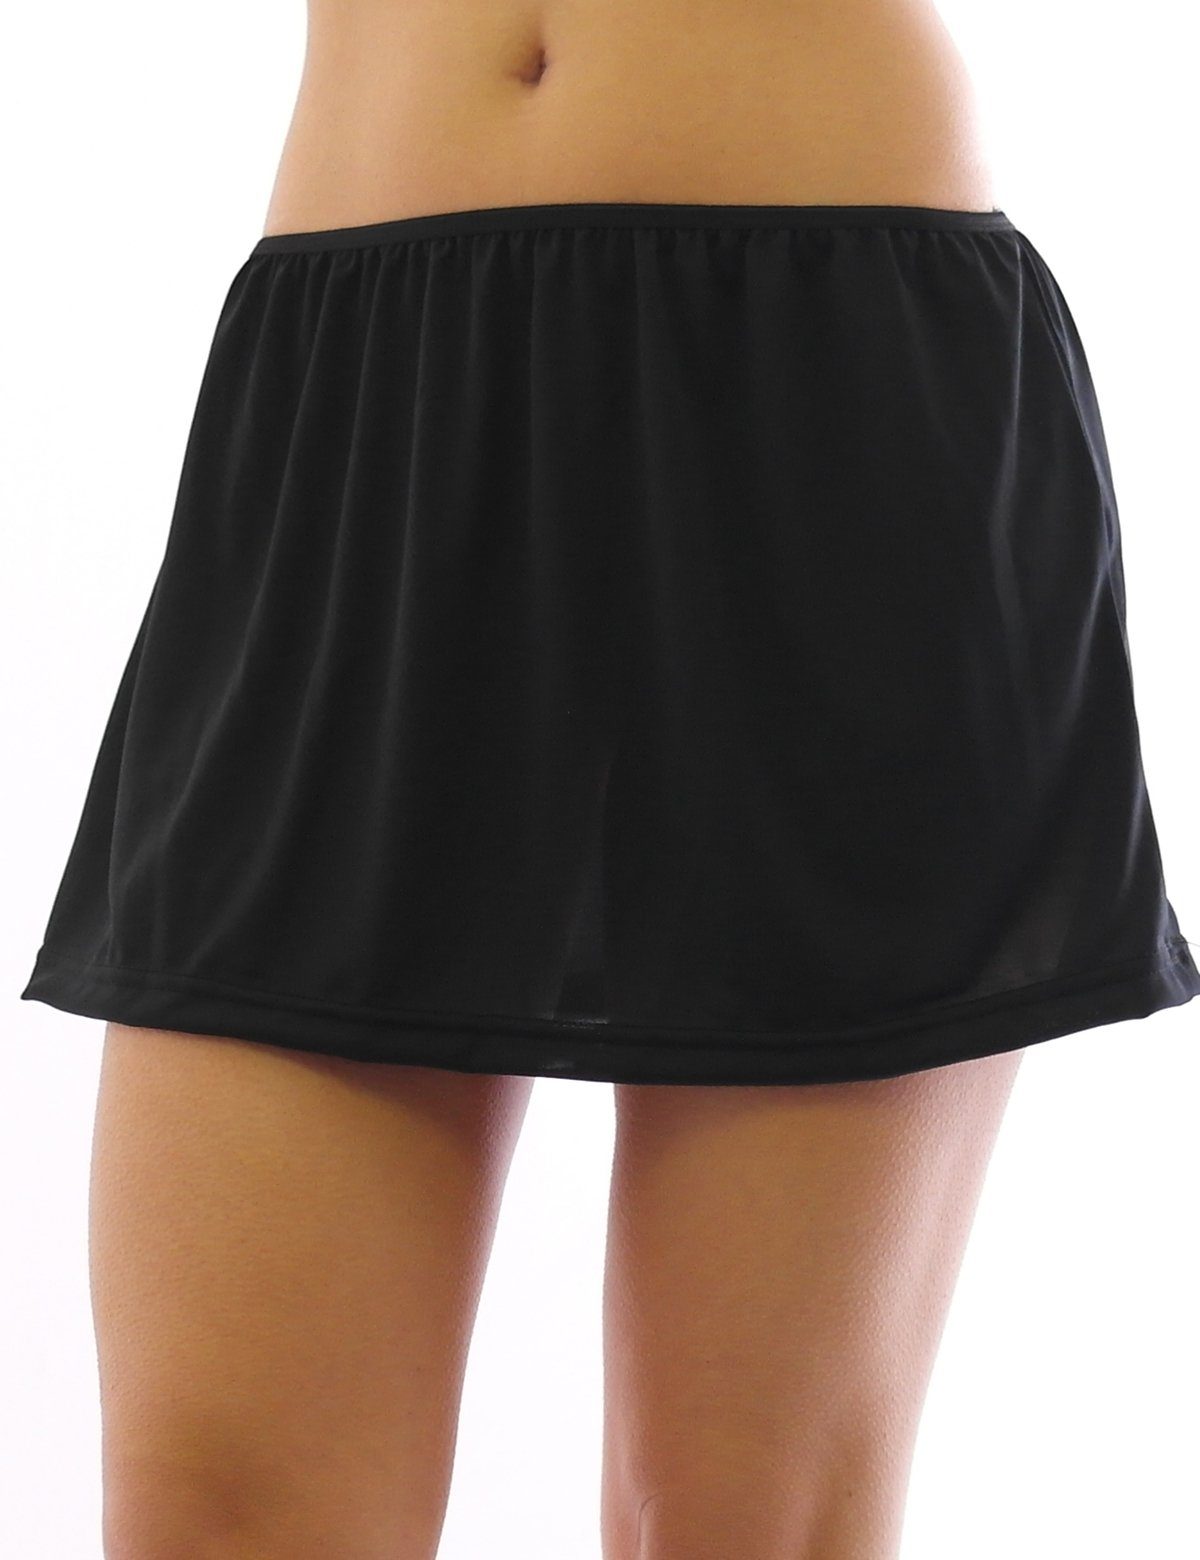 Gummibund Skirt Unterrock Unterrock Minirock SYS Unterwäsche kurz Rock Falten Mini Schwarz